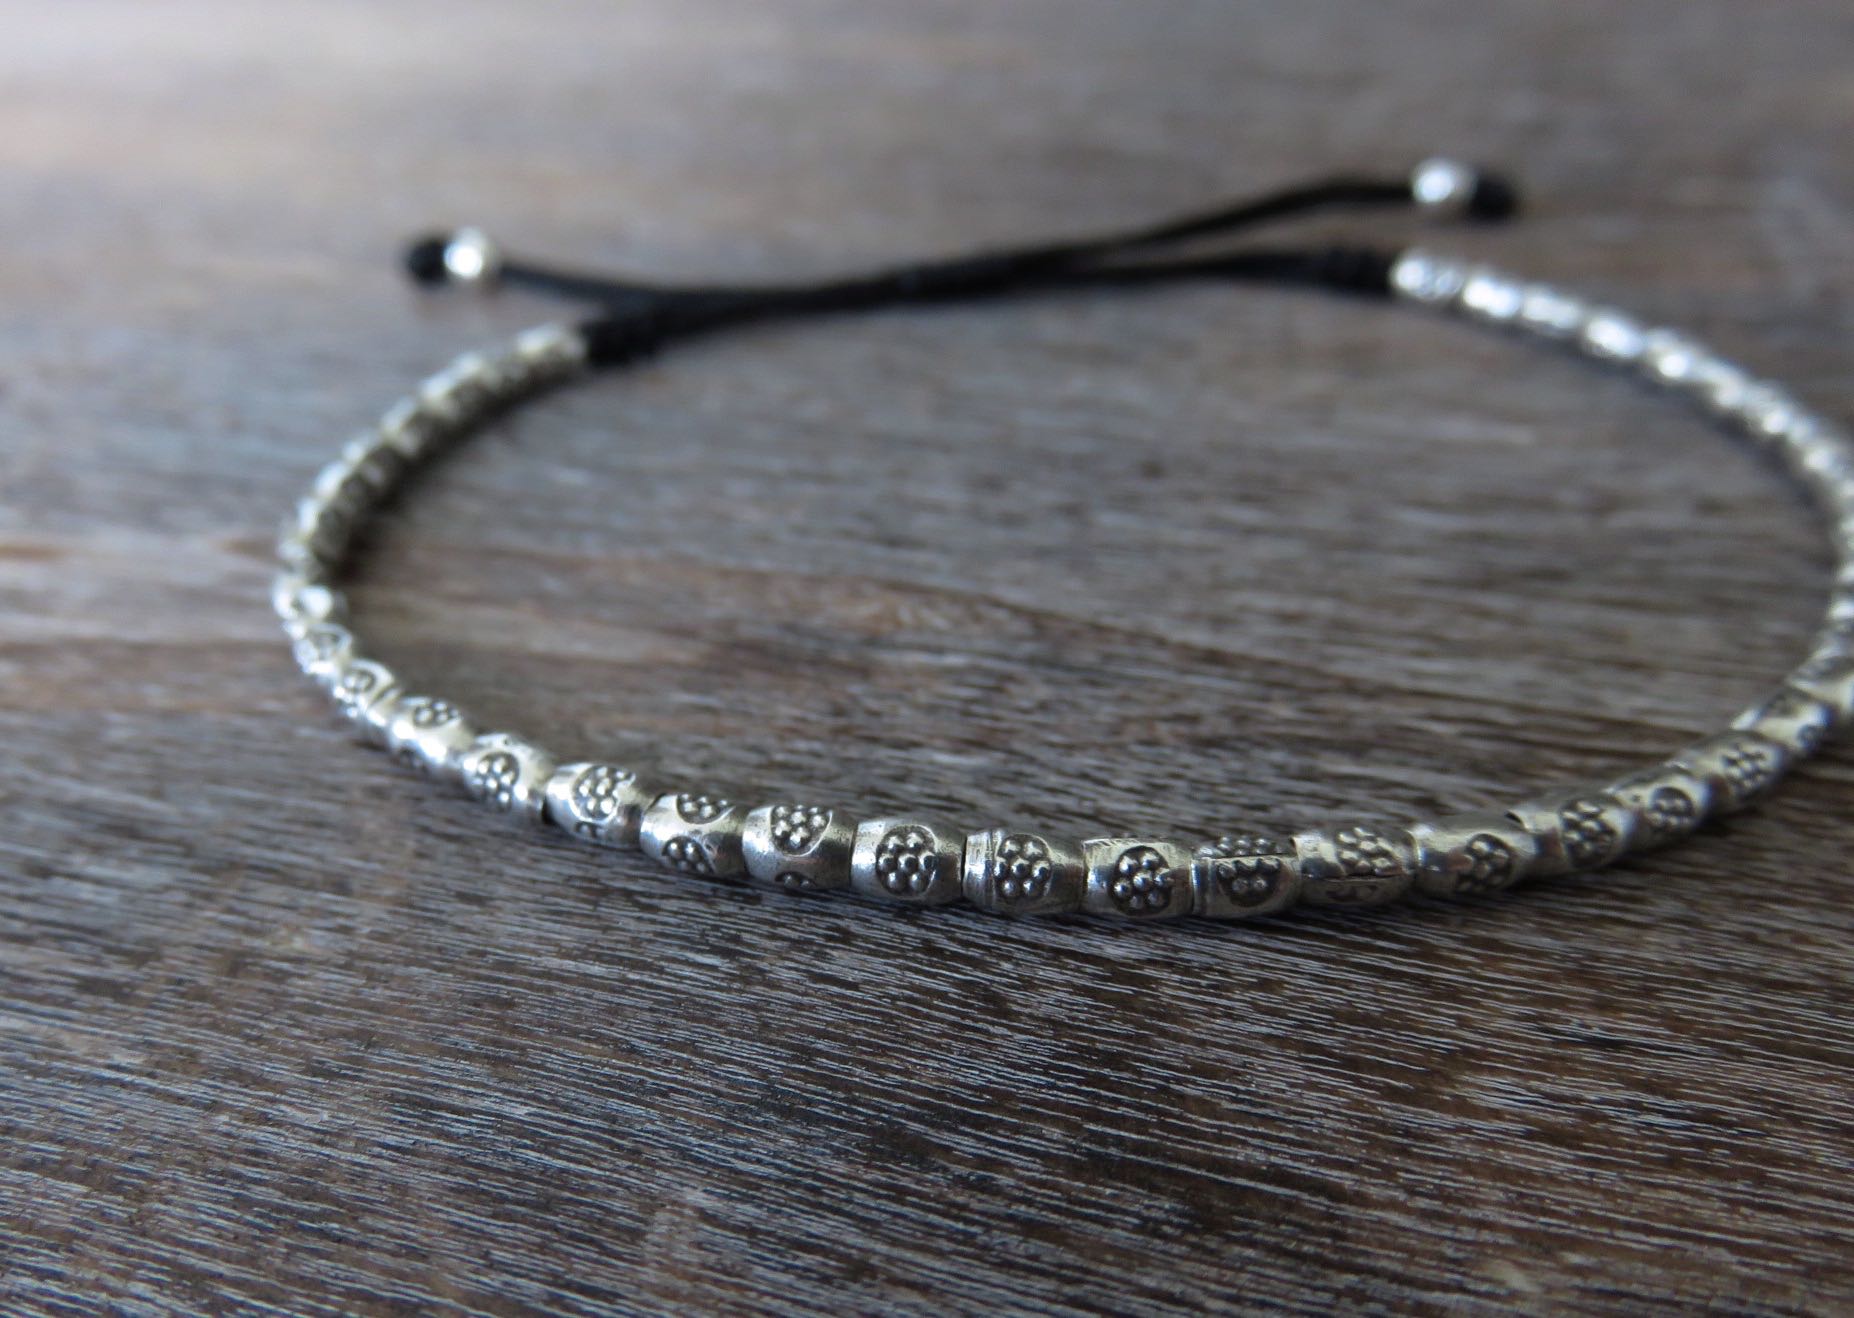 Armband aus silbernen Perlen mit kleinen Blümchen